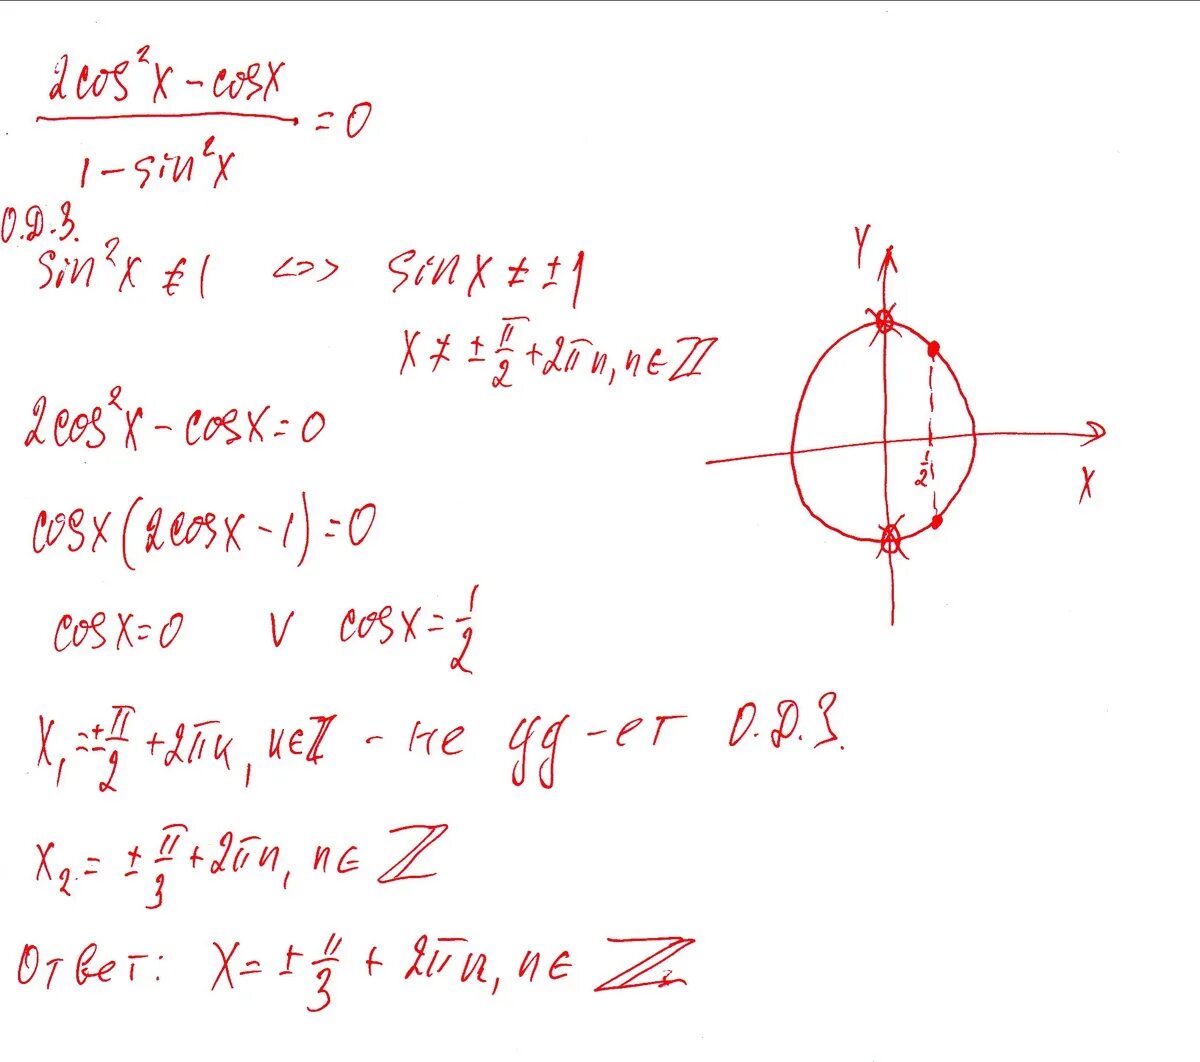 1 cosx cos2x 0. 2cos2x-cosx-1=0. Cos2x=cosx+2. Cosx=√2/2. (2cos x -1)/cos x.